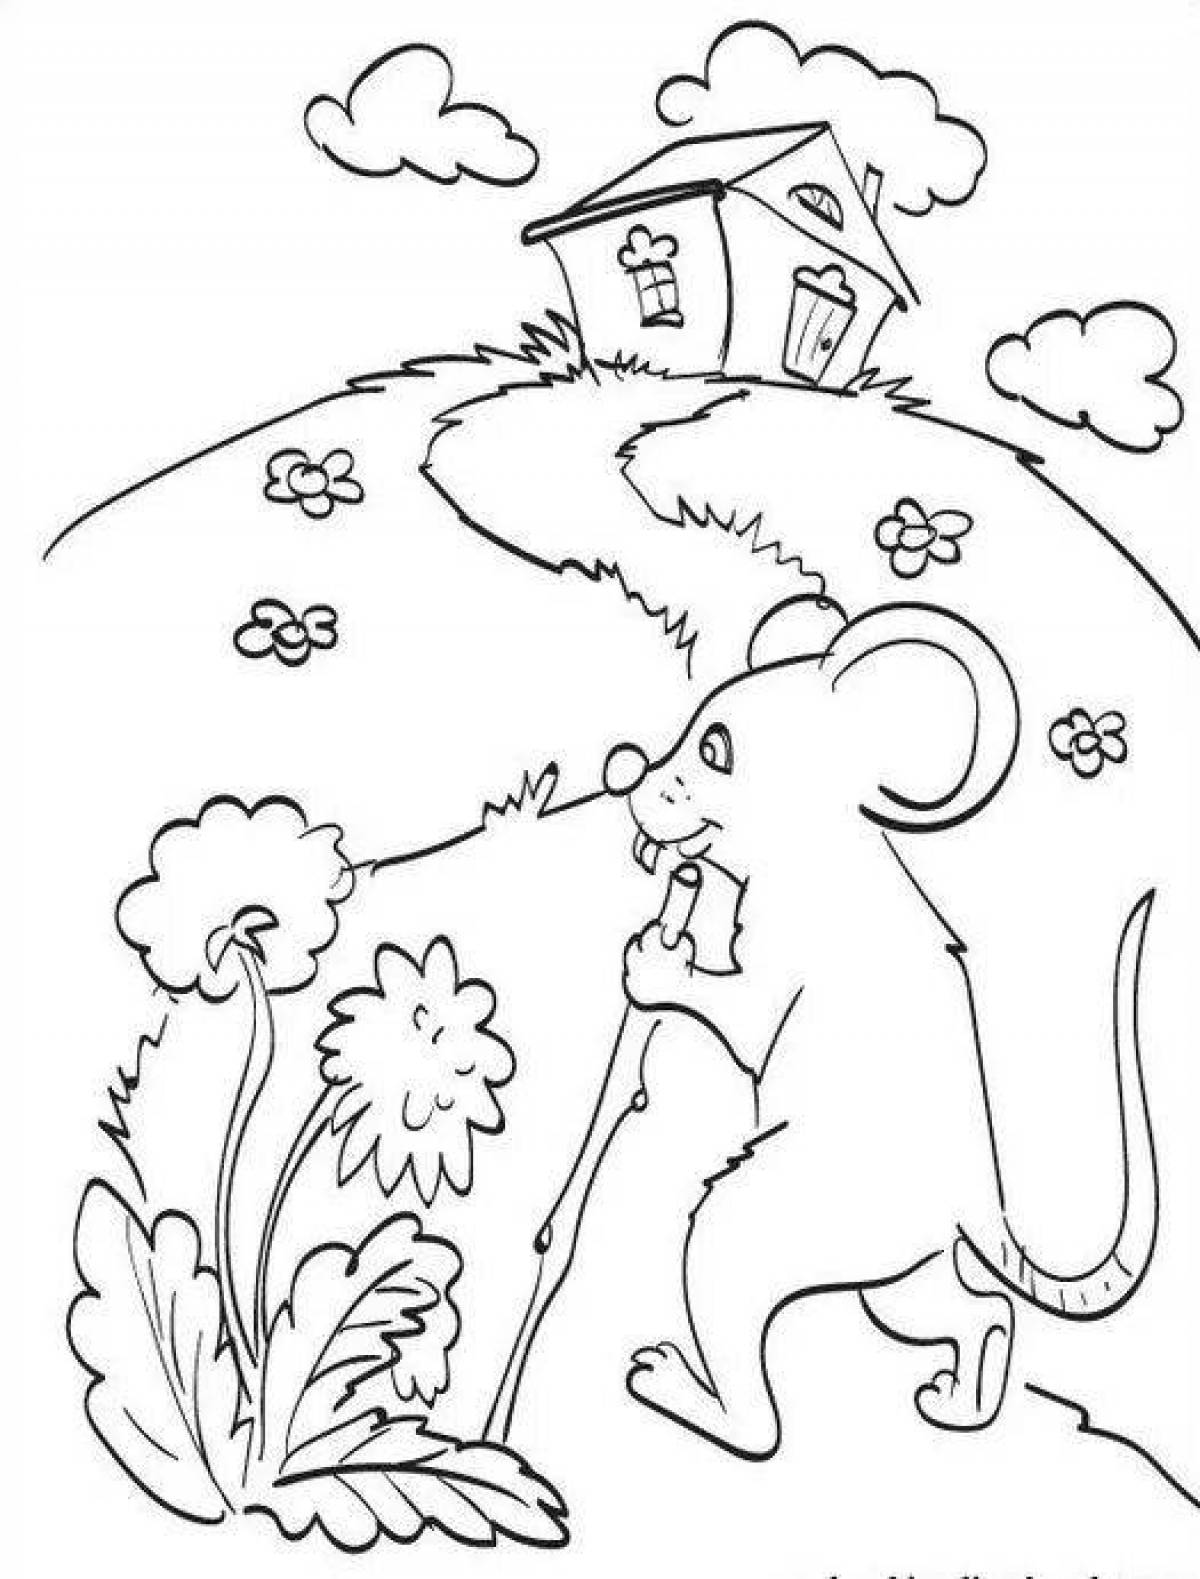 Иллюстрация к сказке Теремок раскраска